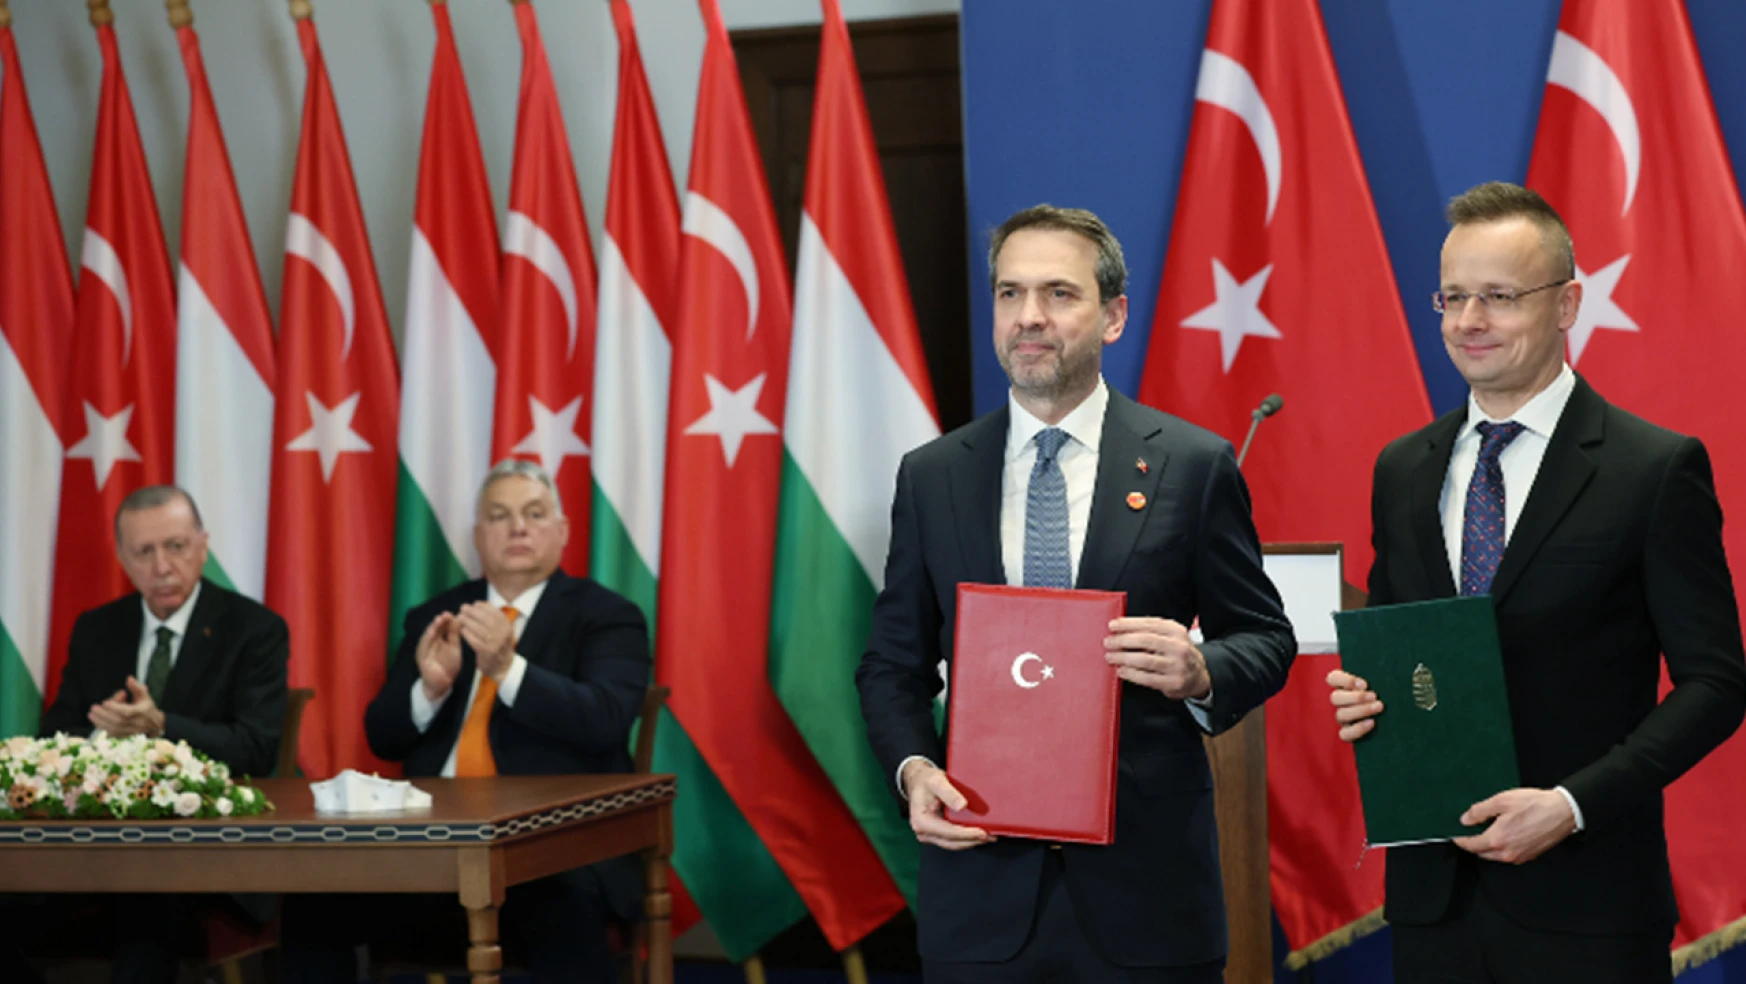 Macaristan ile nükleer ve doğal gazda iş birliği